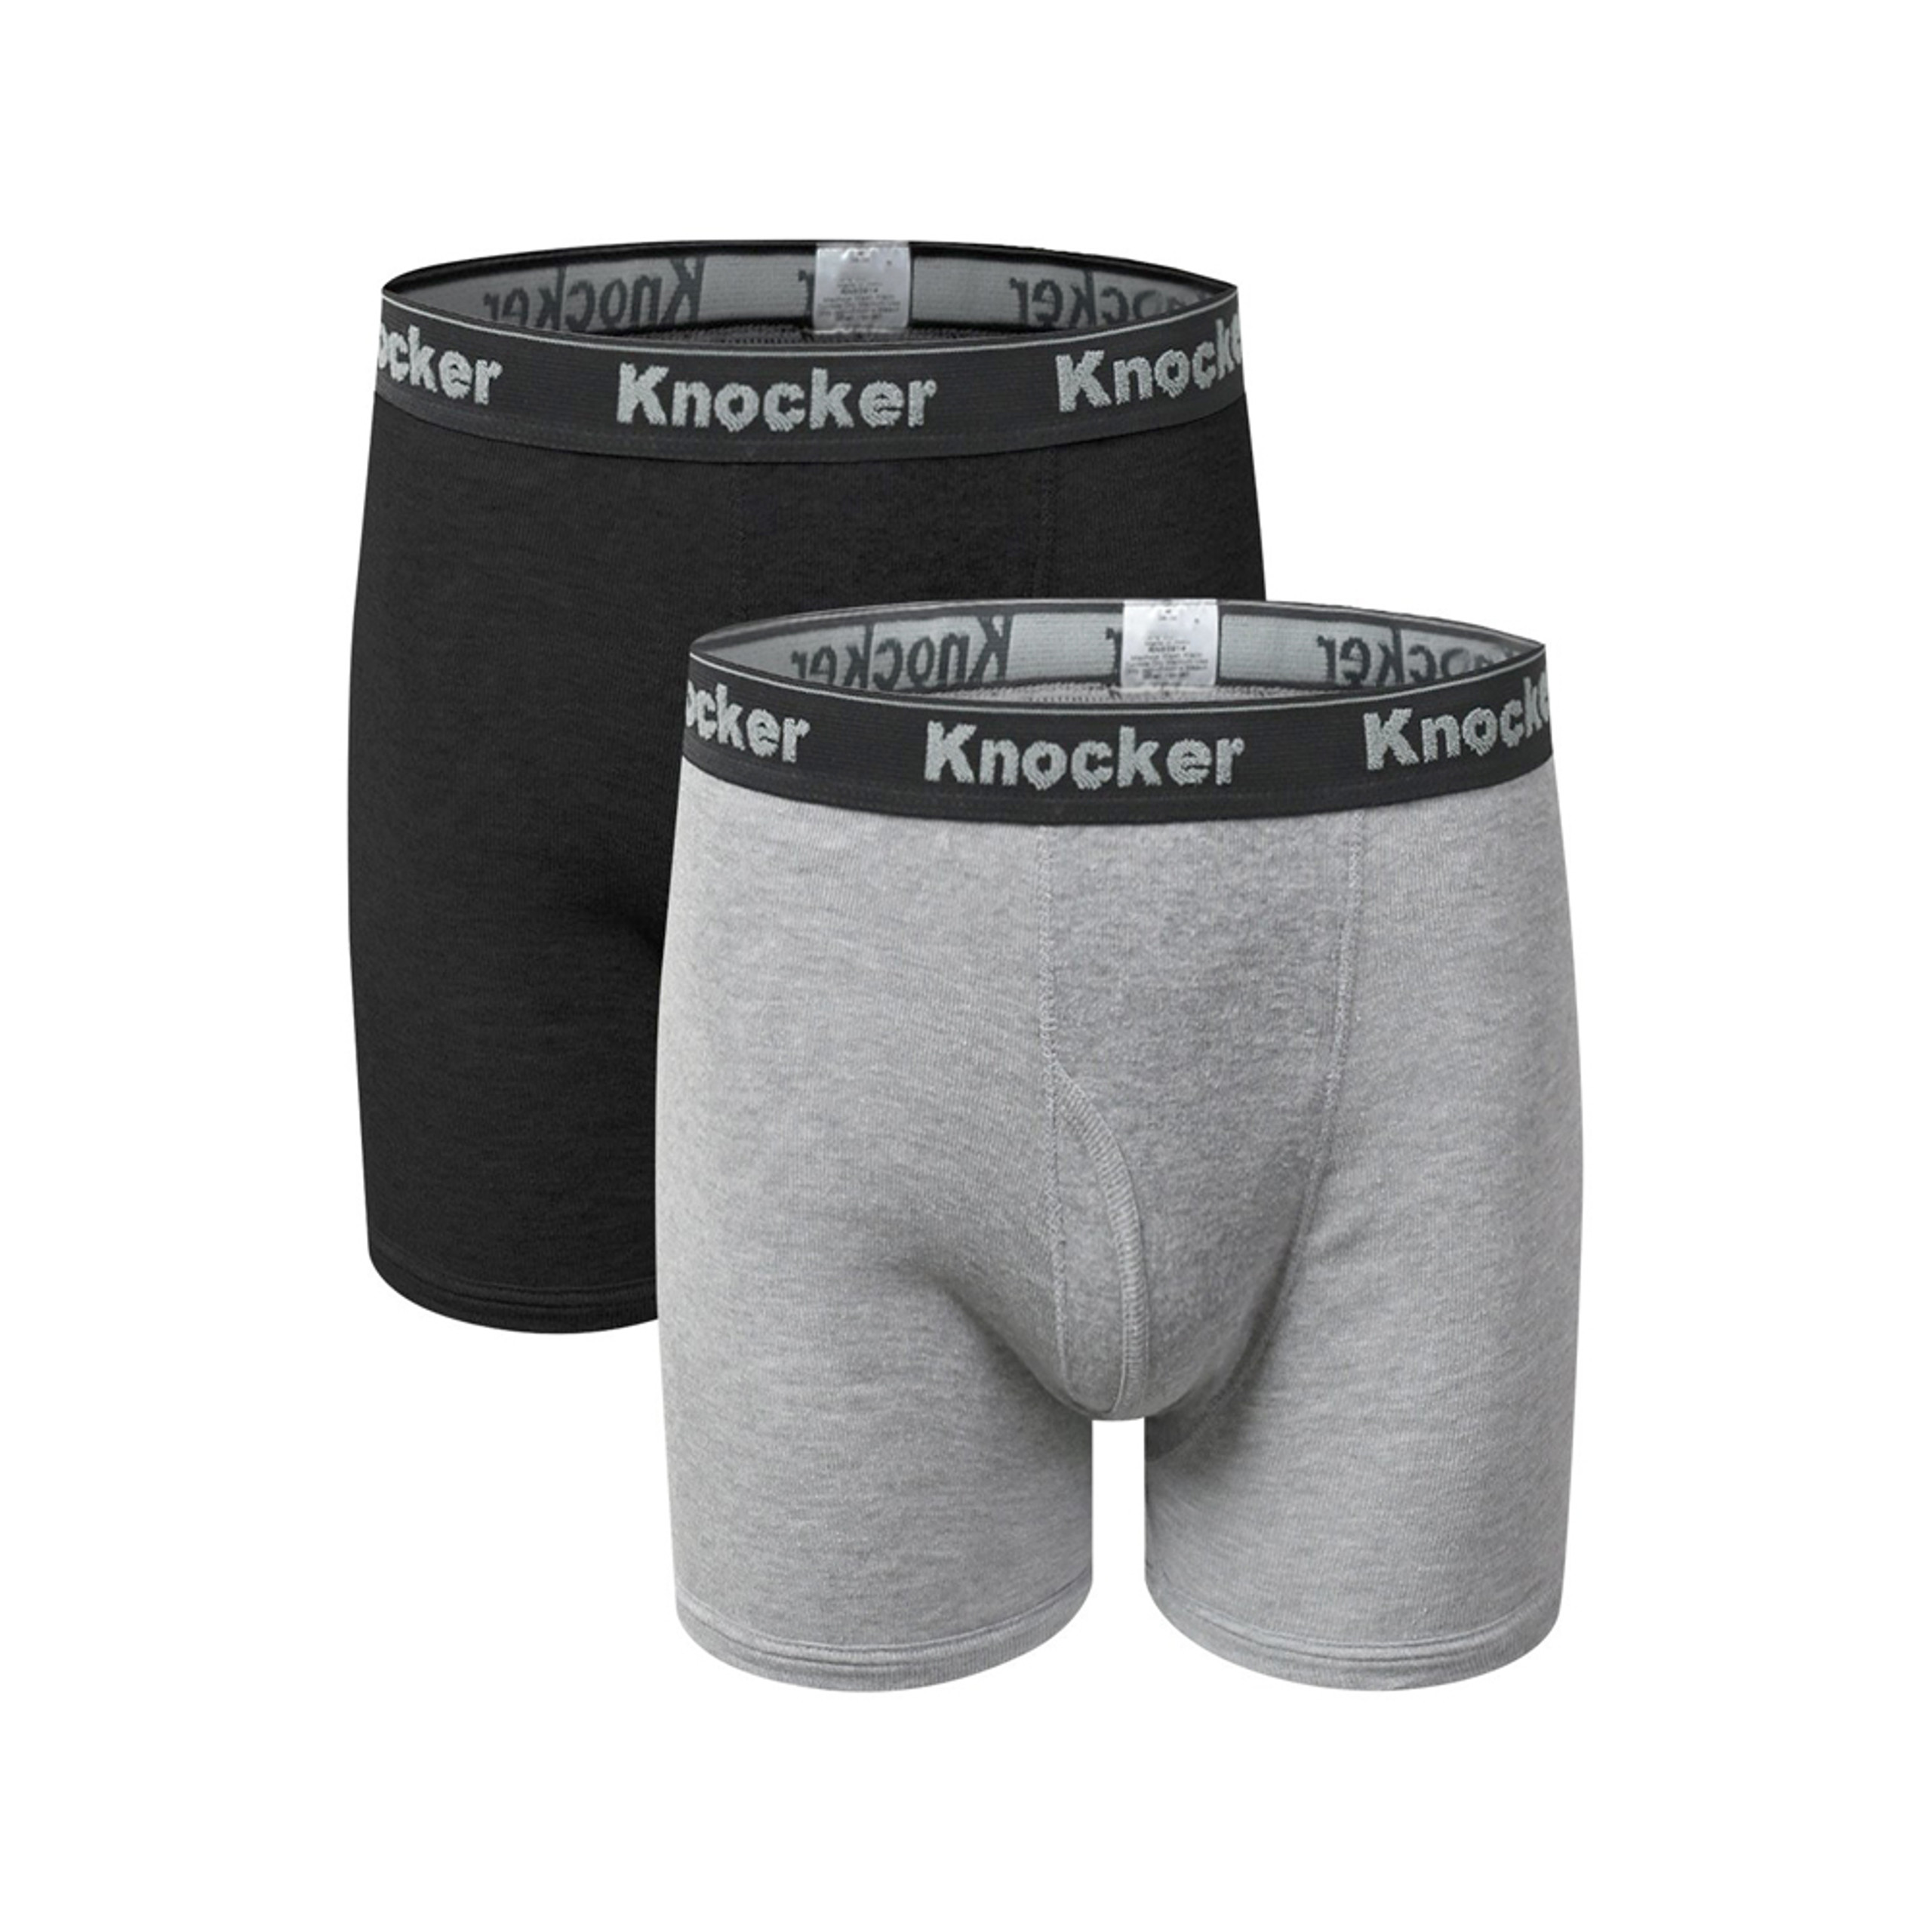 Leo Poldo 100% Cotton Comfort Trunks Boxer Briefs (3-Pack) - UntilGone.com